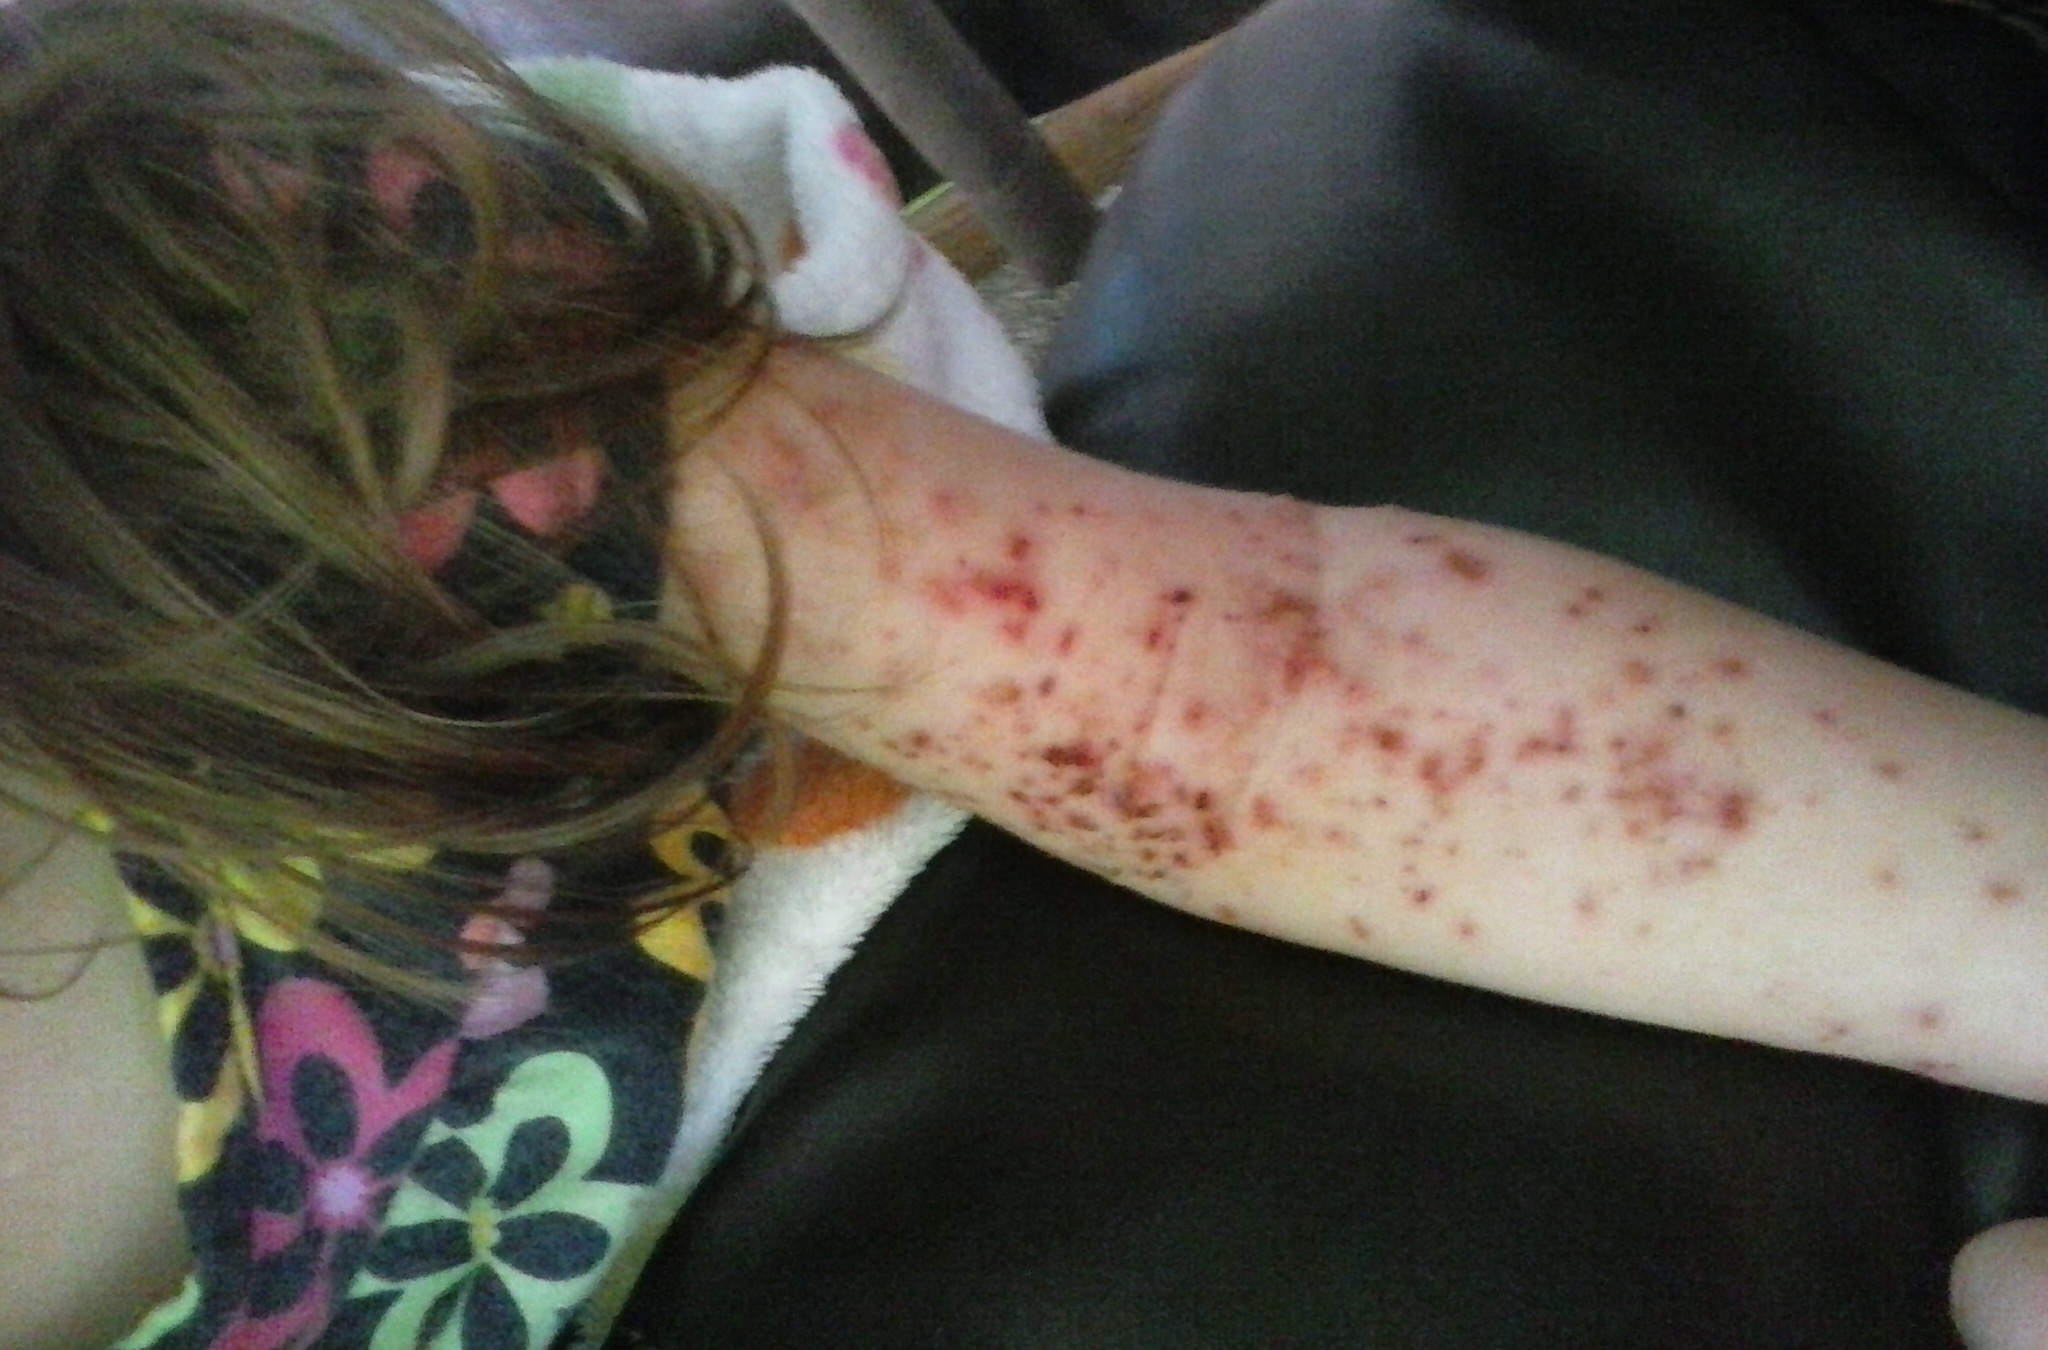 female skin rash before naet treatments